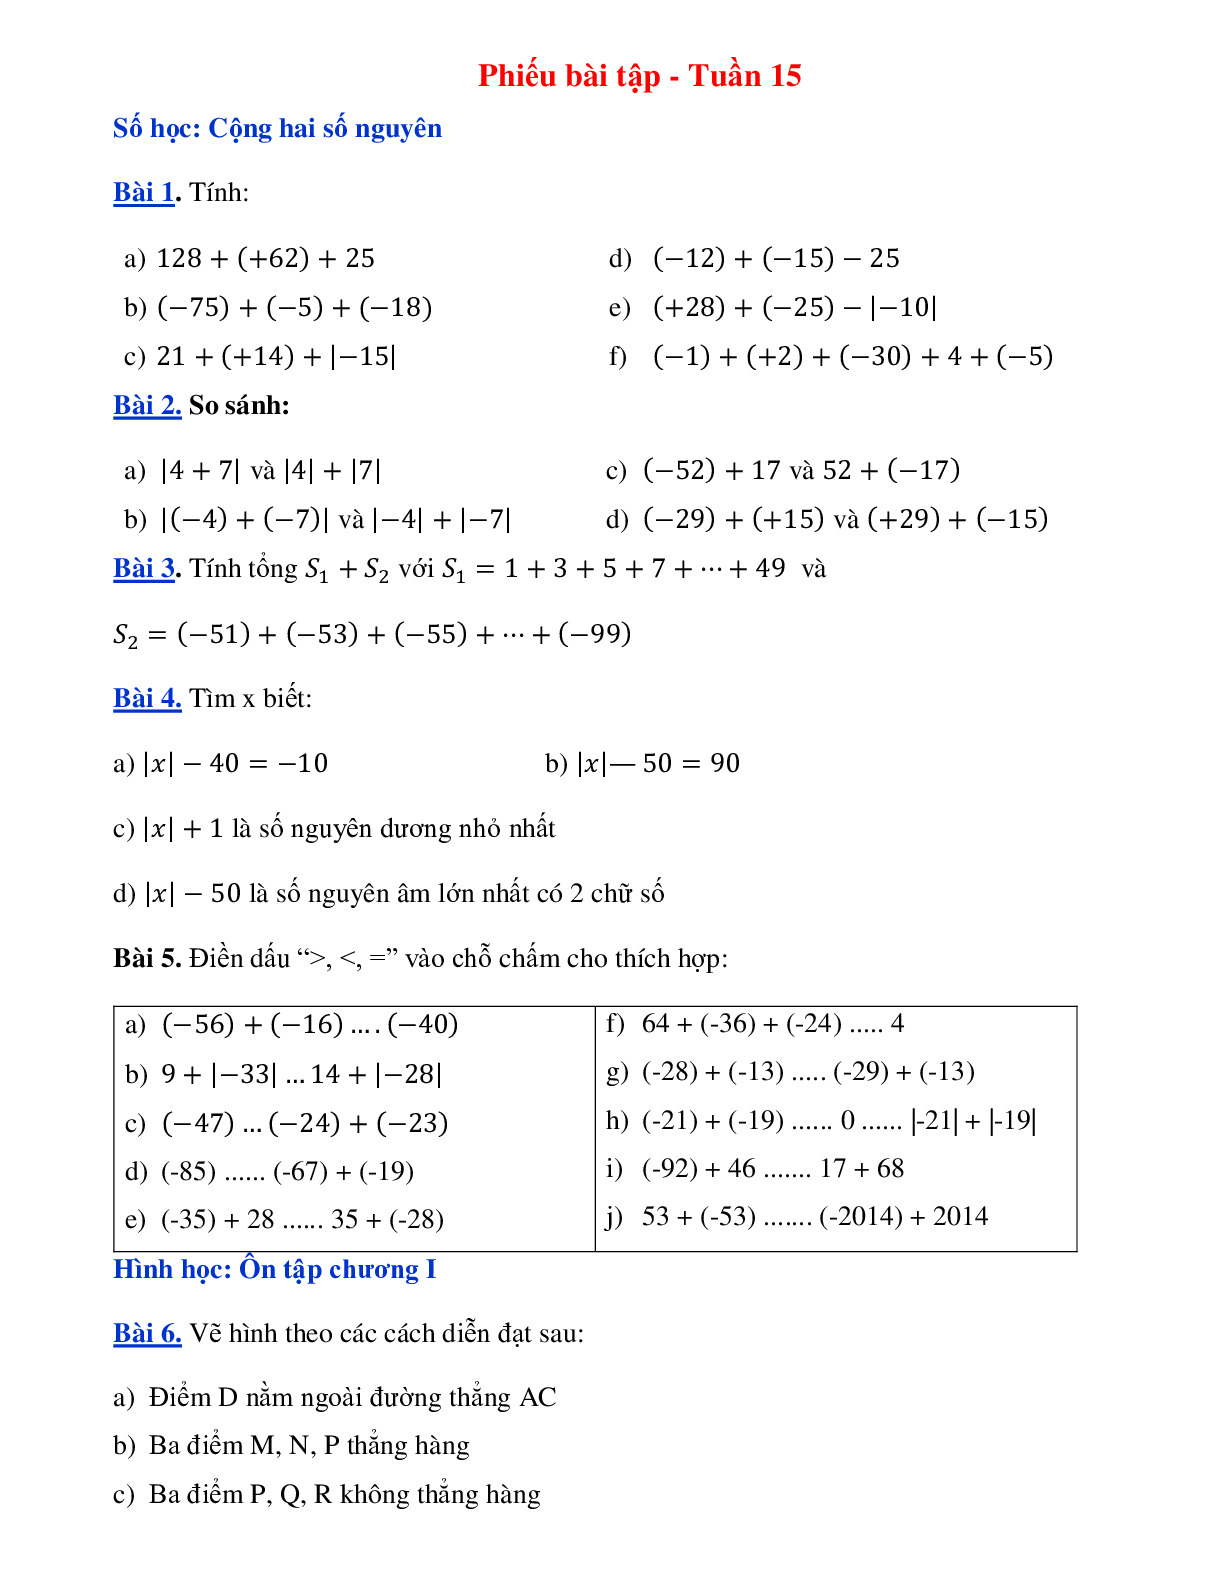 Phiếu bài tập tuần 15 - Toán 6 (trang 1)